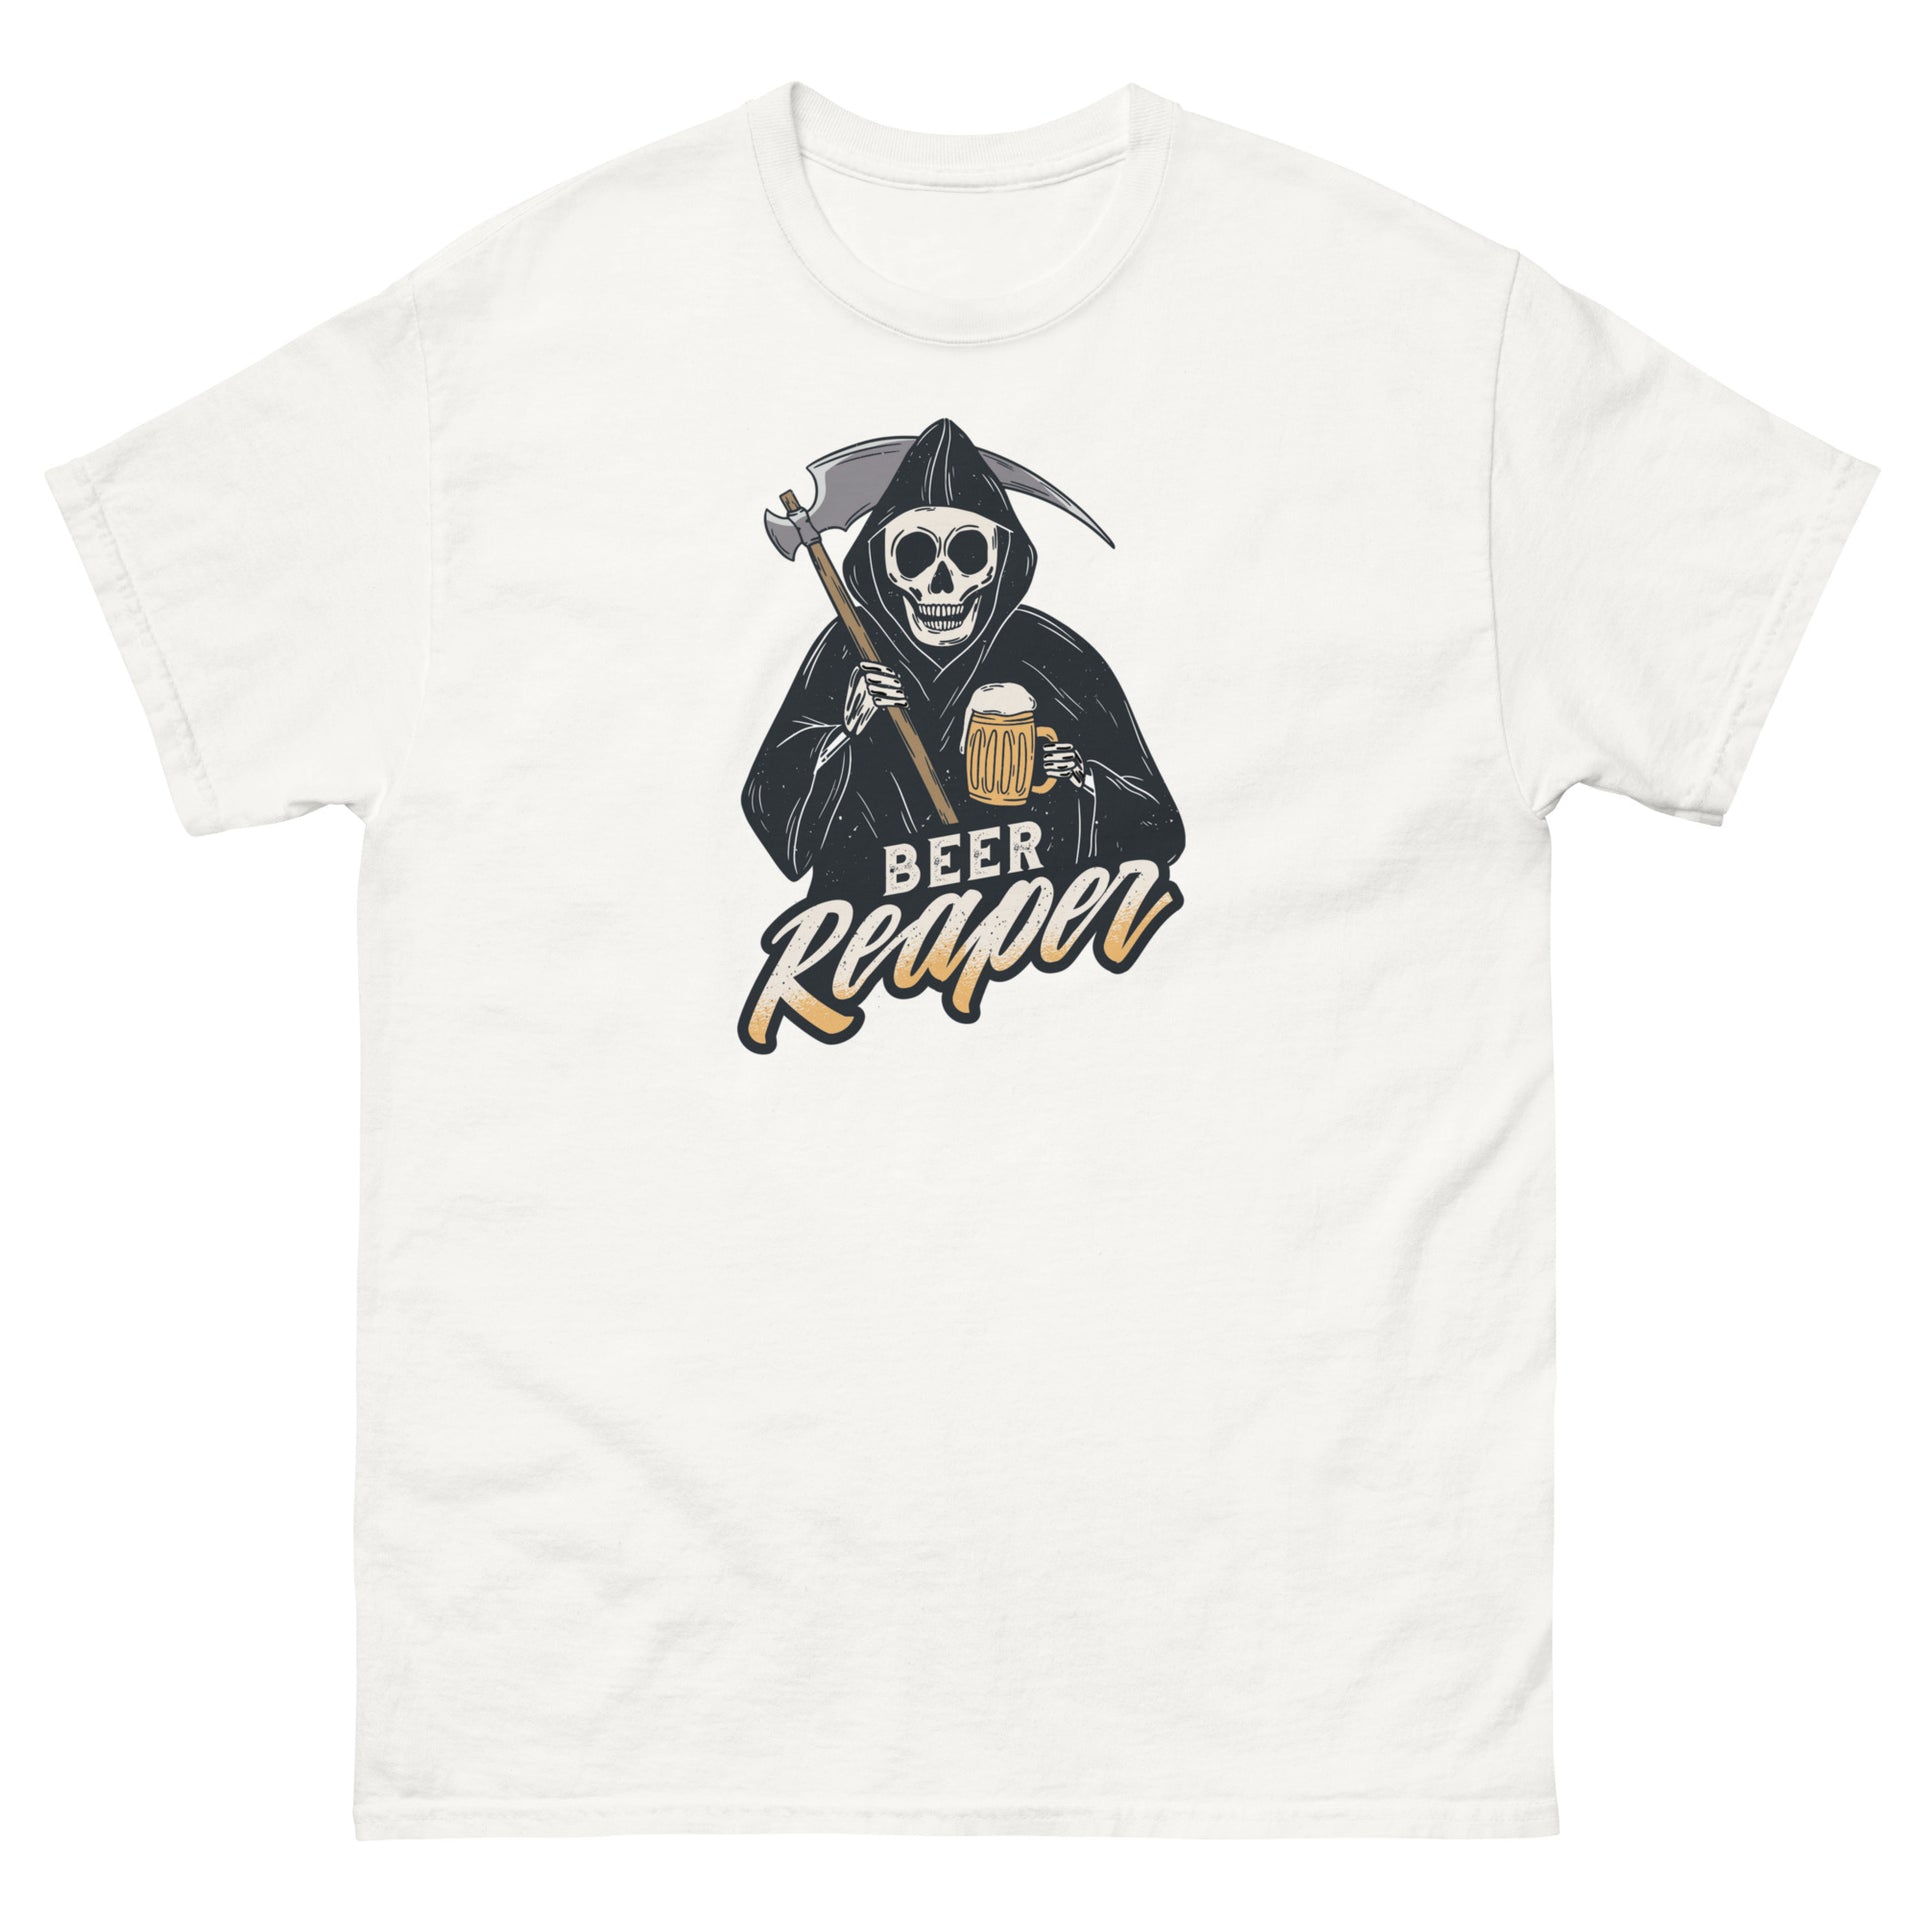 Beer Reaper Men's T-Shirt